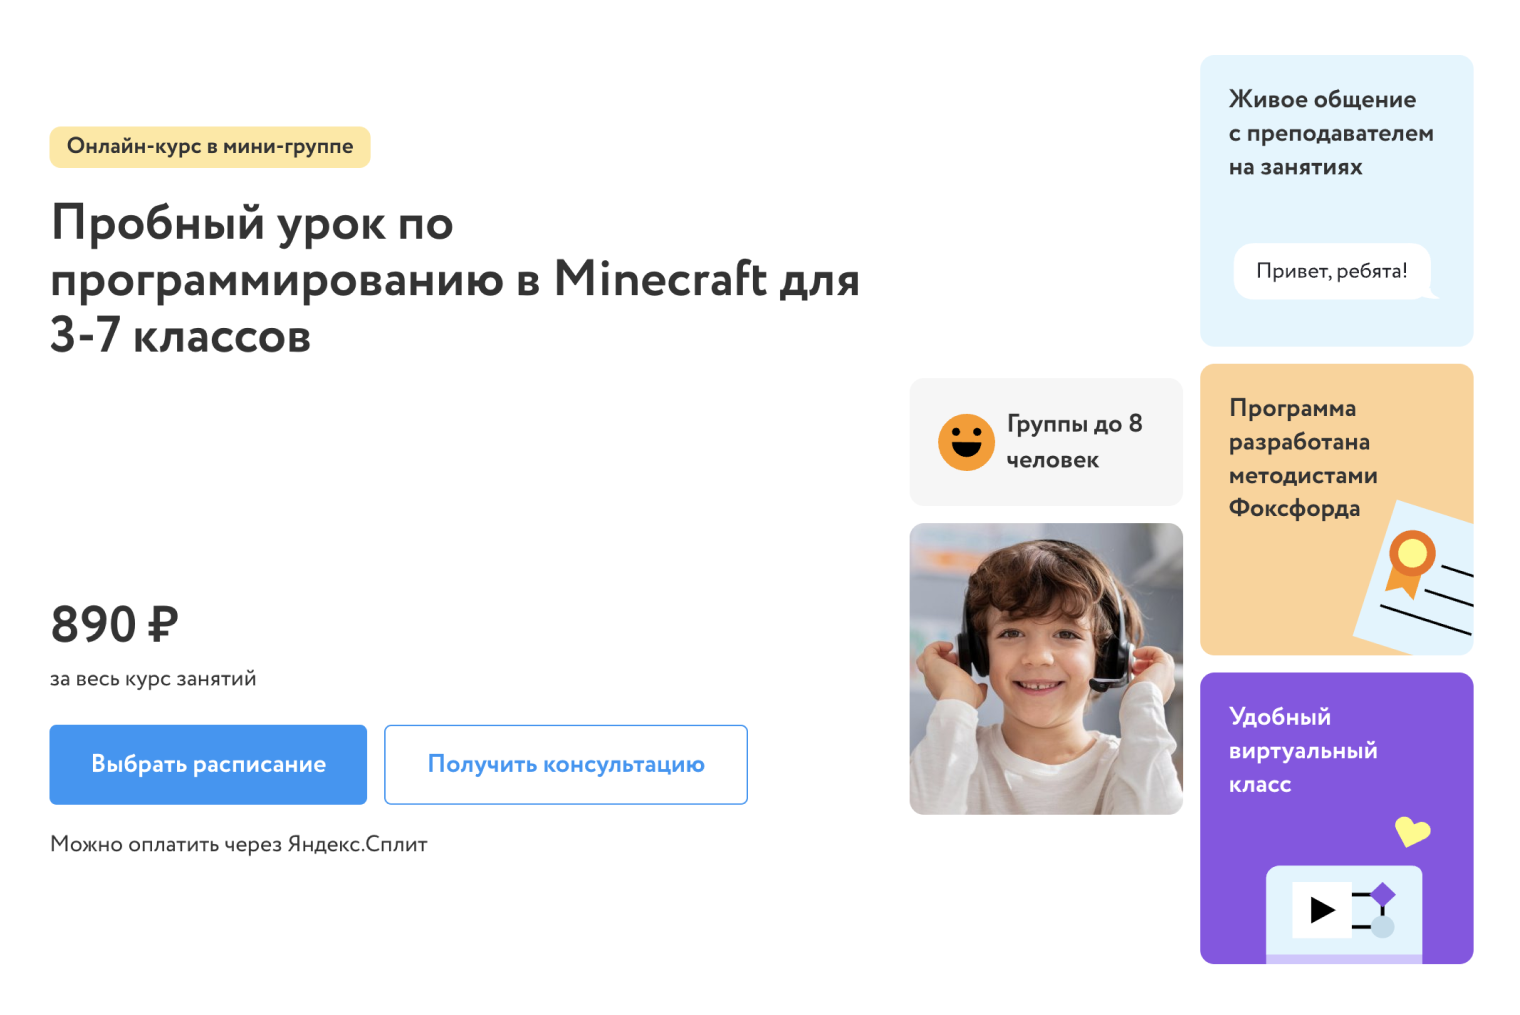 В нашей онлайн-школе можно даже научиться программировать в «Майнкрафте». Источник: foxford.ru